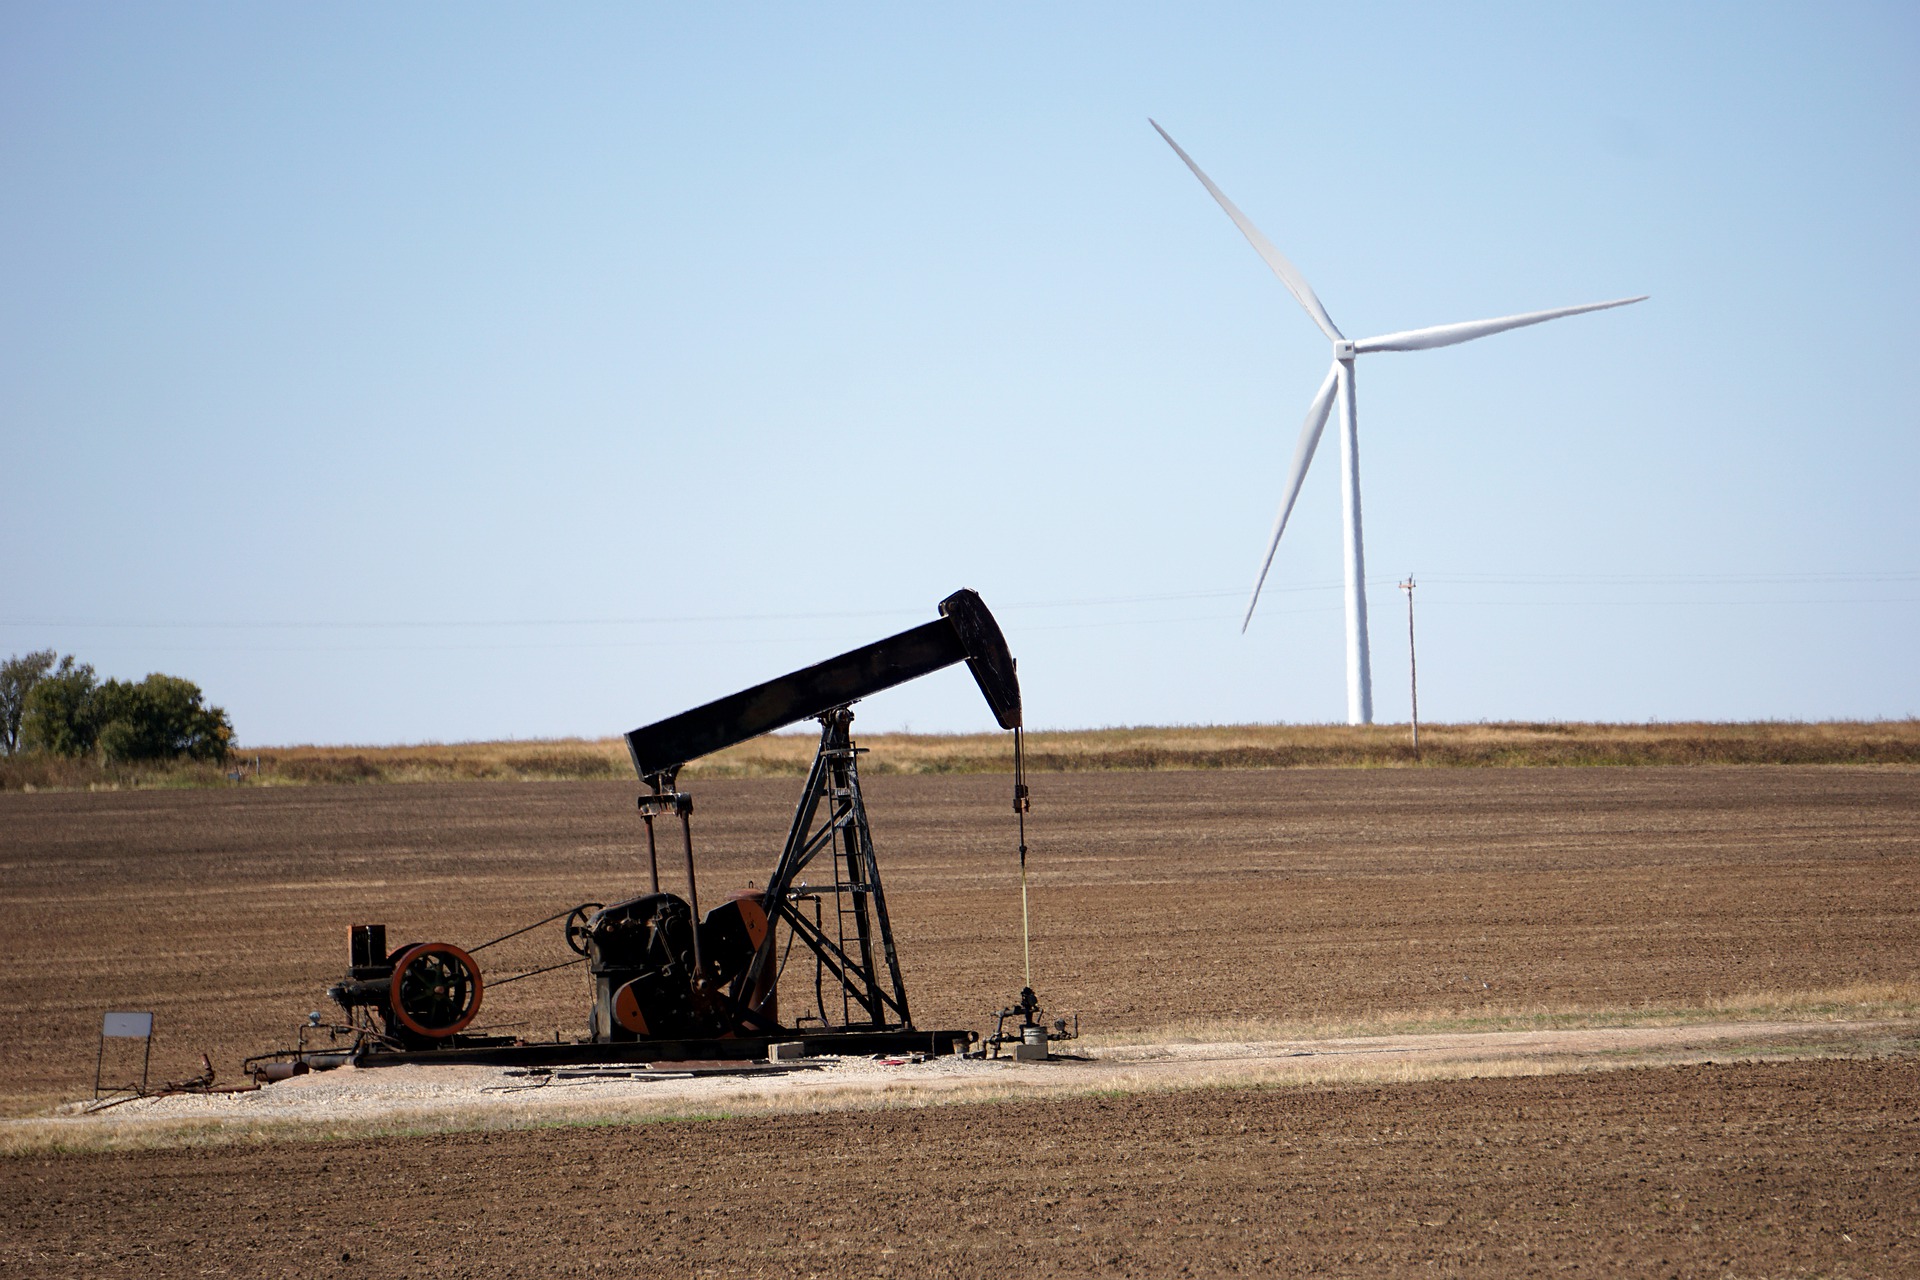 G20 gastou US$ 1,4 trilhões com apoio financeiro a combustíveis fósseis em 2022, mostra estudo. Na imagem: Bomba de petróleo para exploração onshore em um terreno descampado, com turbinas eólicas ao fundo (Foto: Michael/Pixabay)